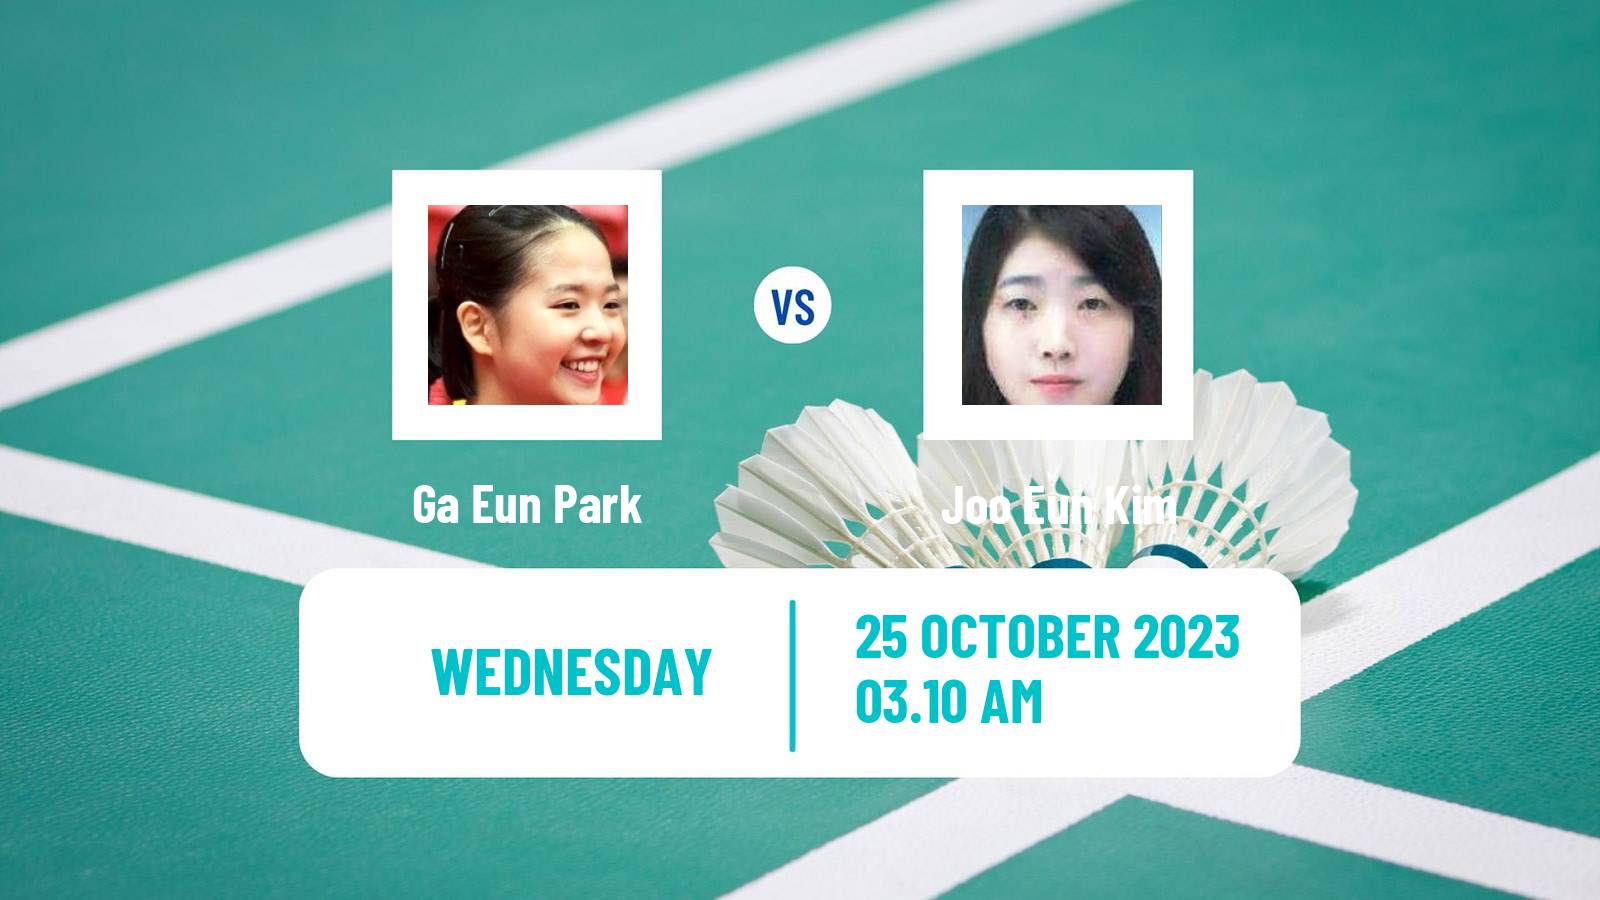 Badminton BWF World Tour Indonesia Masters 3 Women Ga Eun Park - Joo Eun Kim